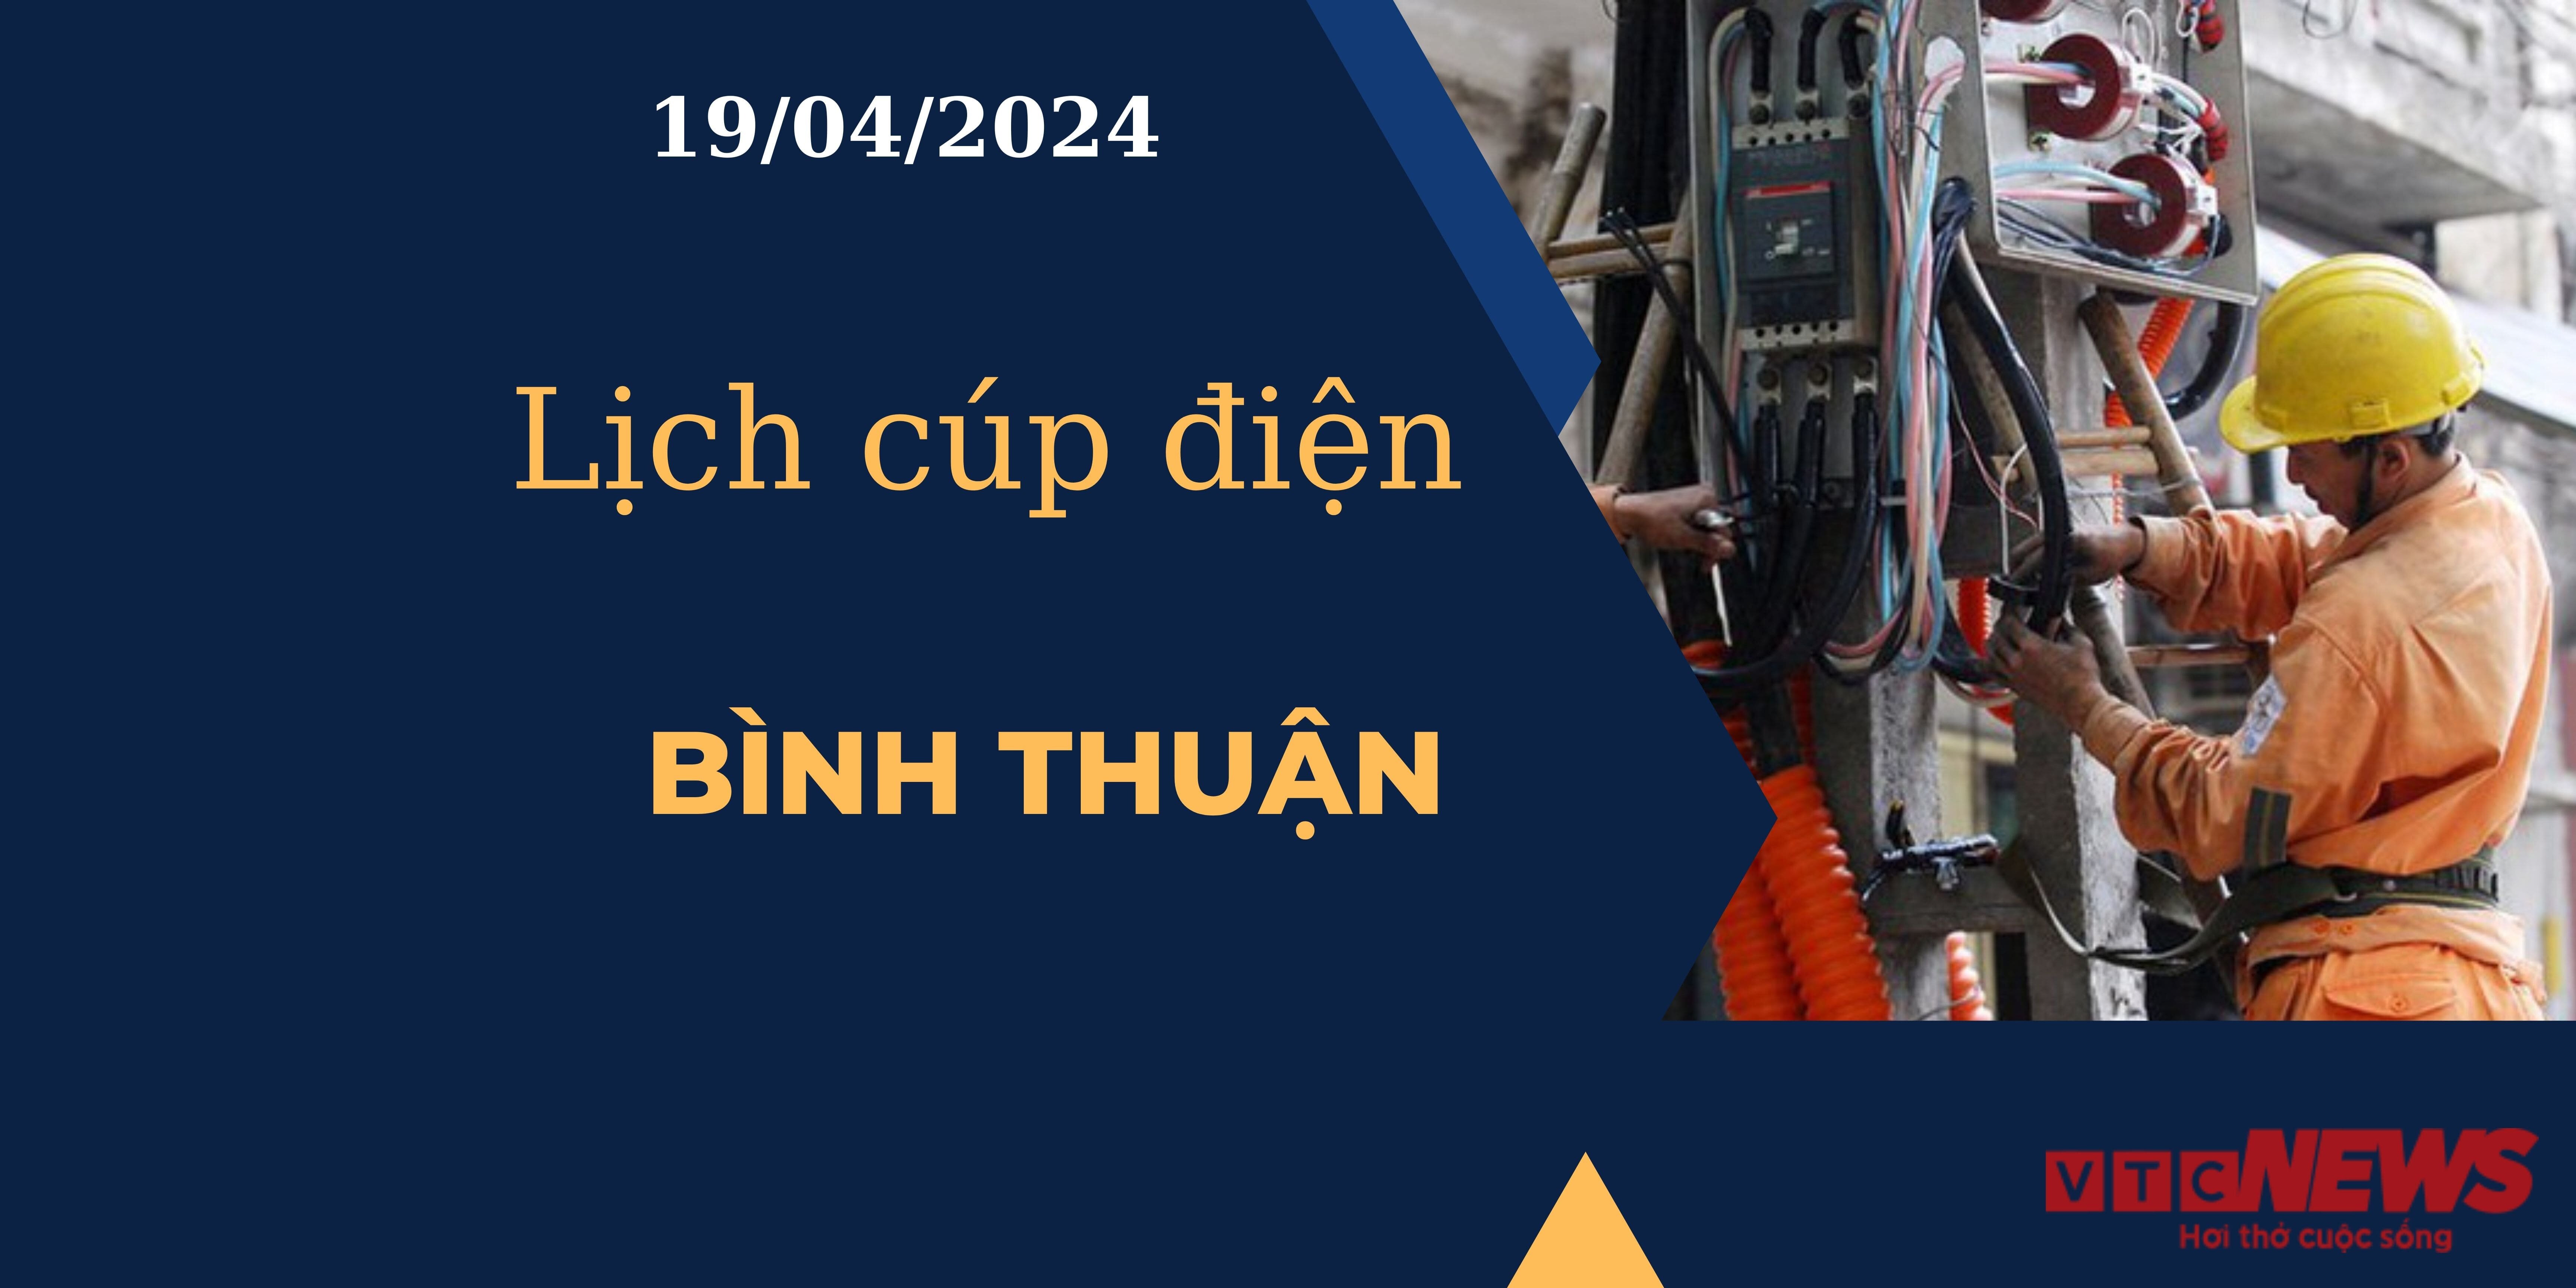 Lịch cúp điện hôm nay tại Bình Thuận ngày 19/04/2024